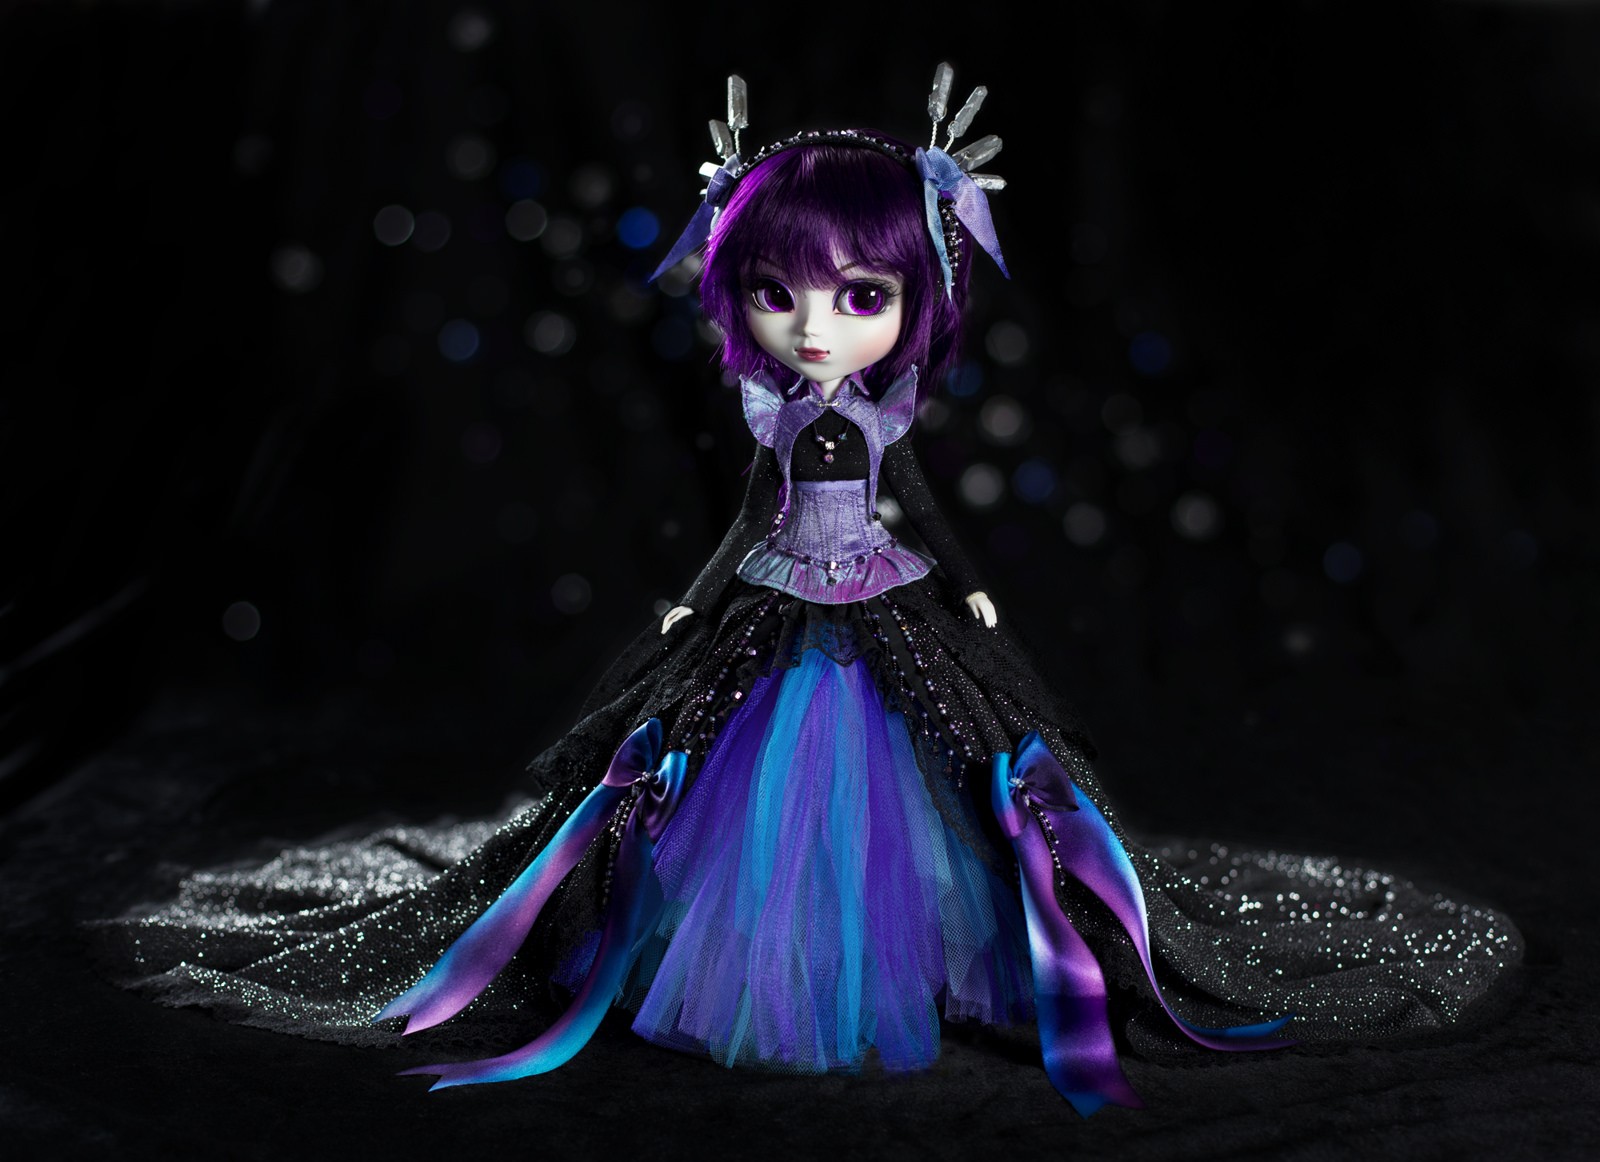 General 1600x1162 Baby Doll bokeh dress purple lights purple dress sparkles looking away